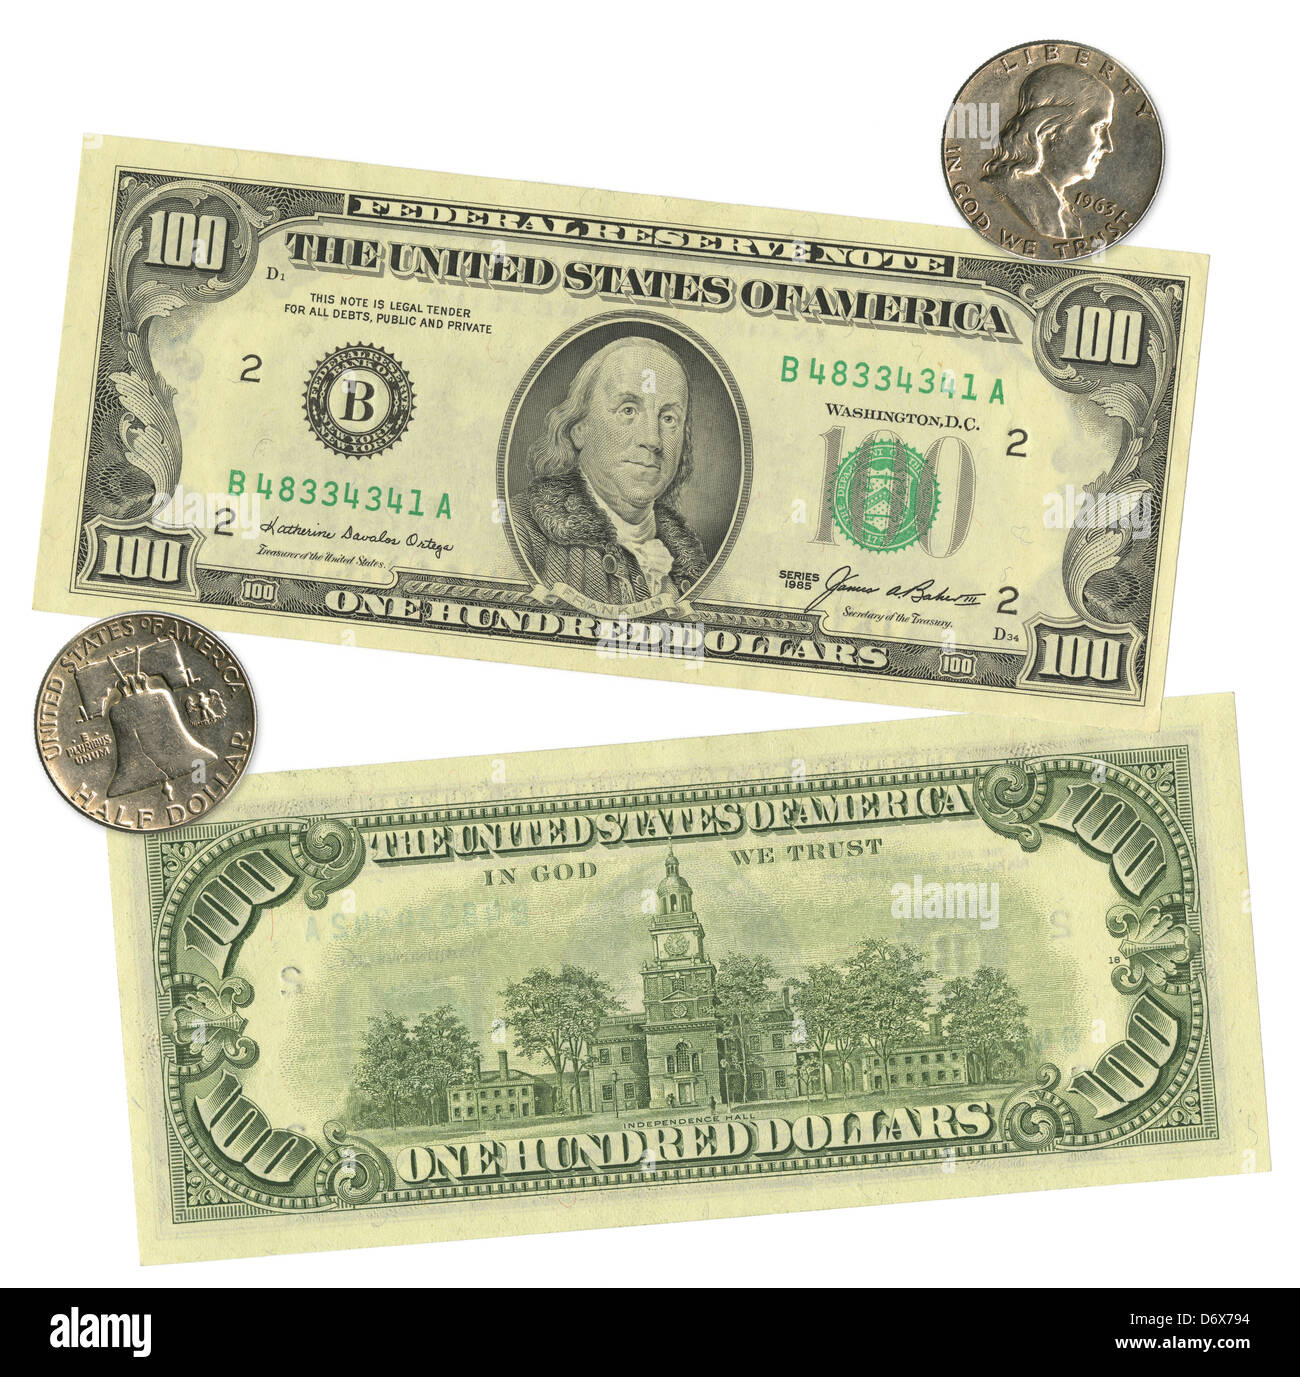 Benjamin Franklin in den USA 1985 $100 Bill und einen halben Dollar 1963 Silber. Stockfoto